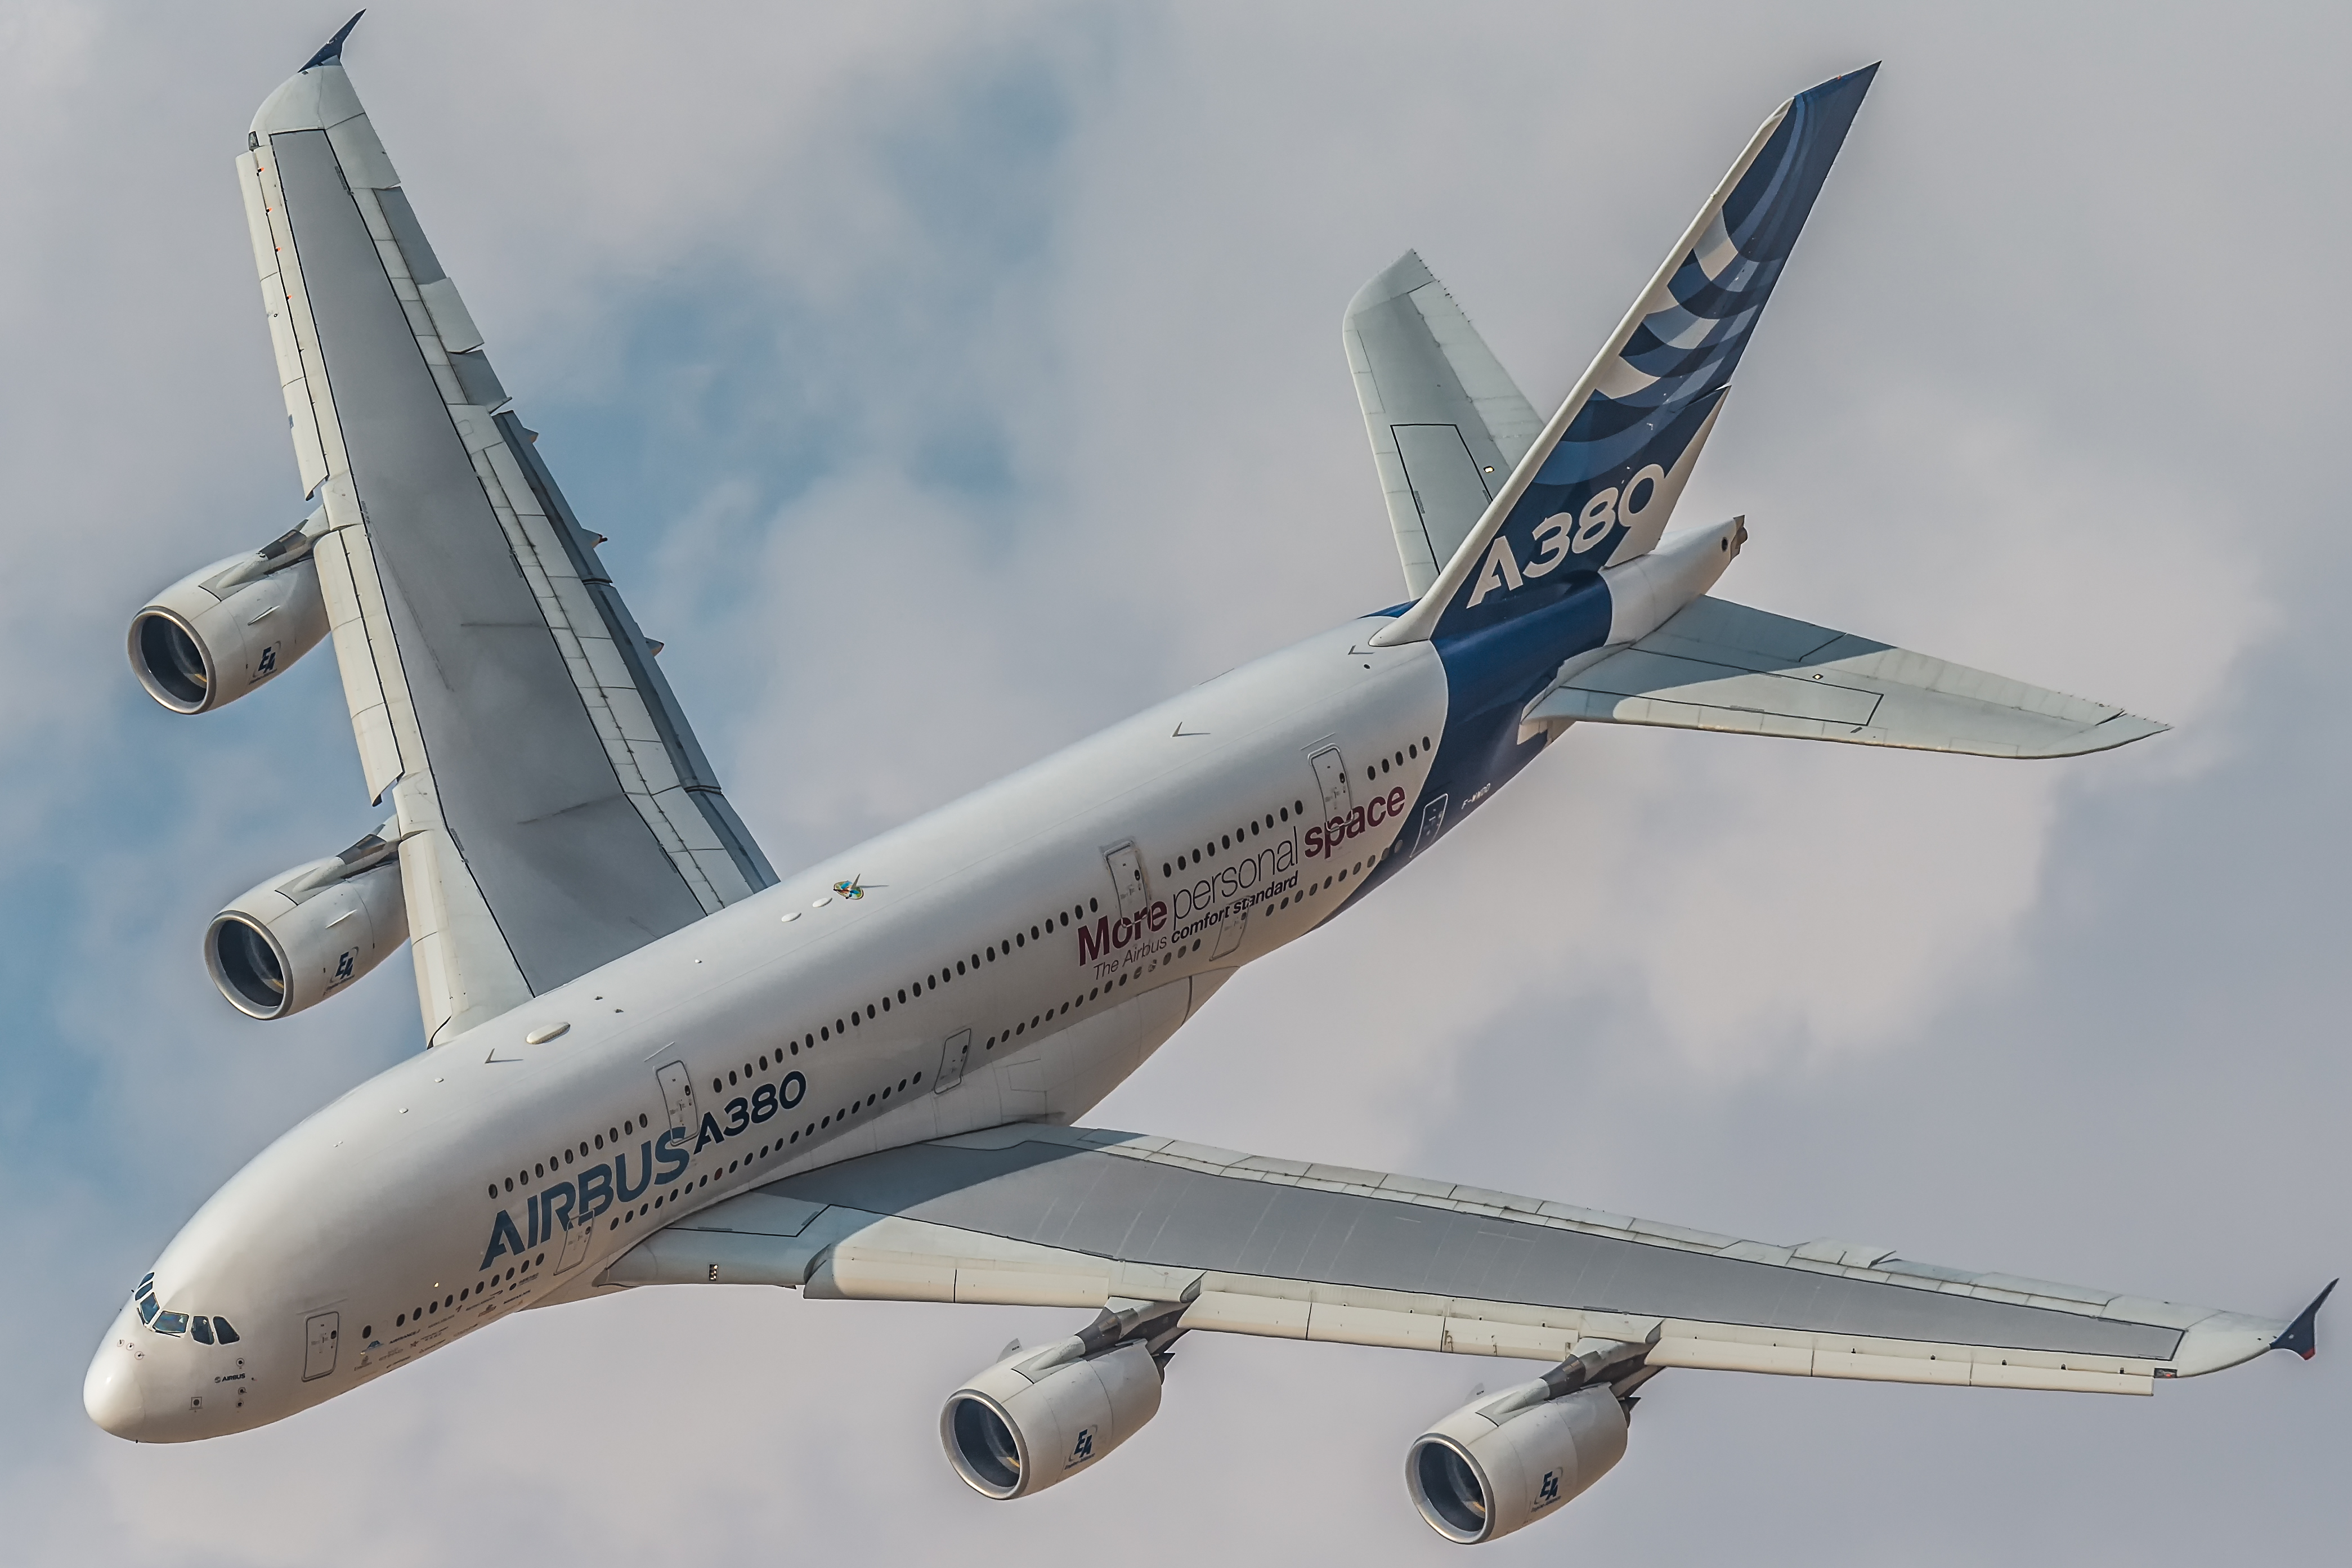 Airbus A380 Airbus Passenger Plane Aircraft Airplane 4179x2786